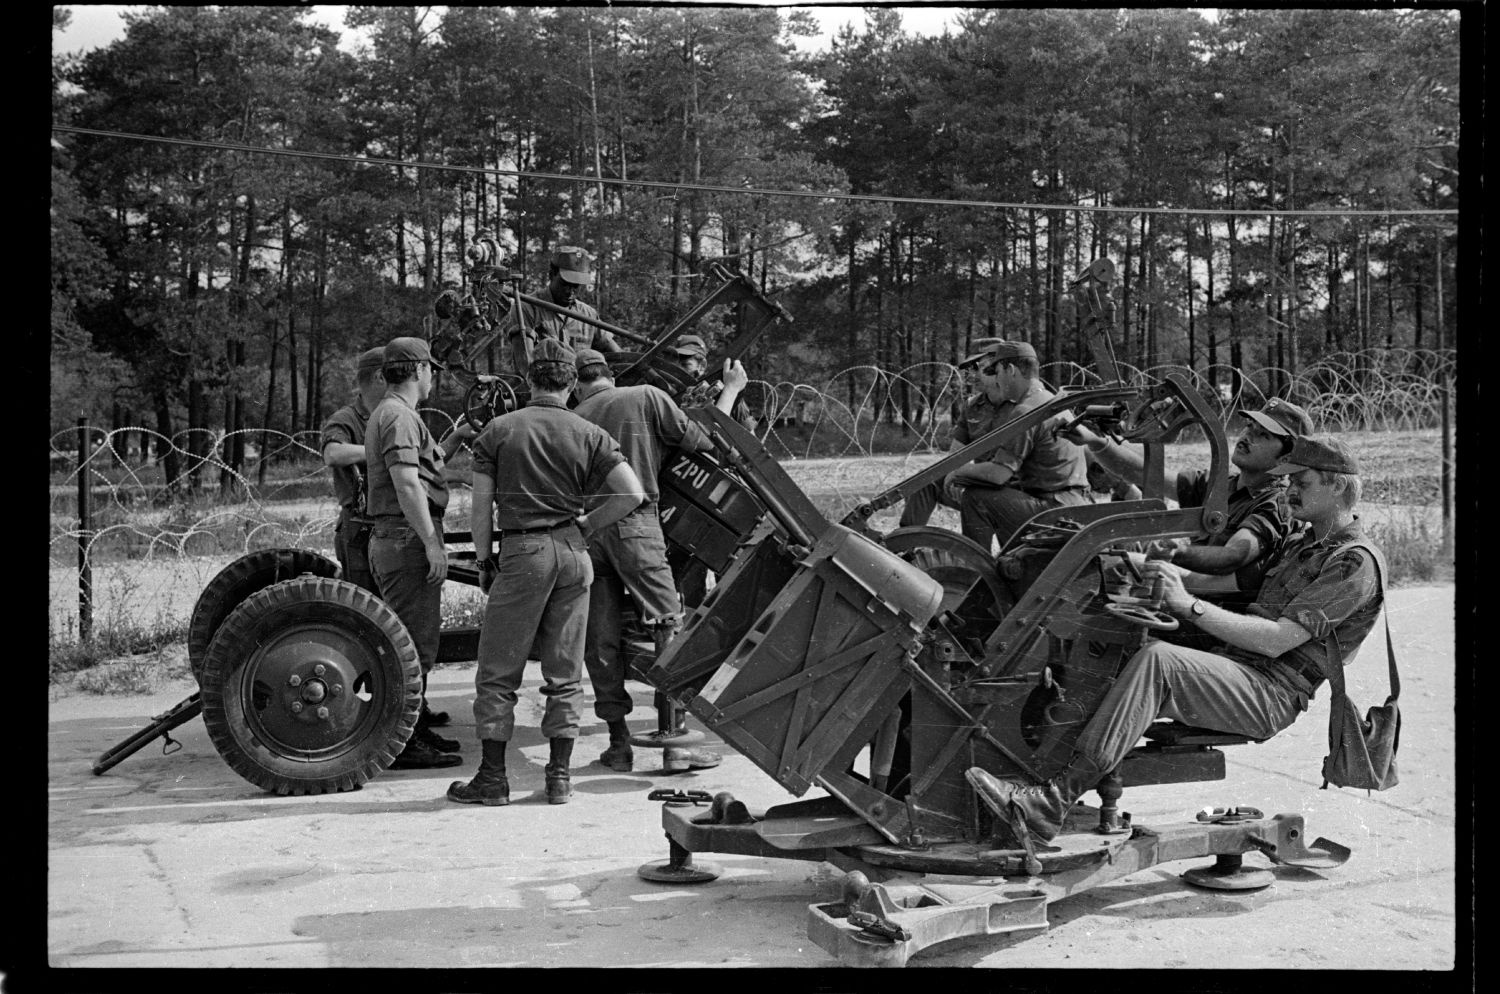 s/w-Fotografie: Militärische Ausbildung der U.S. Army Berlin Brigade (AlliiertenMuseum/U.S. Army Photograph Public Domain Mark)